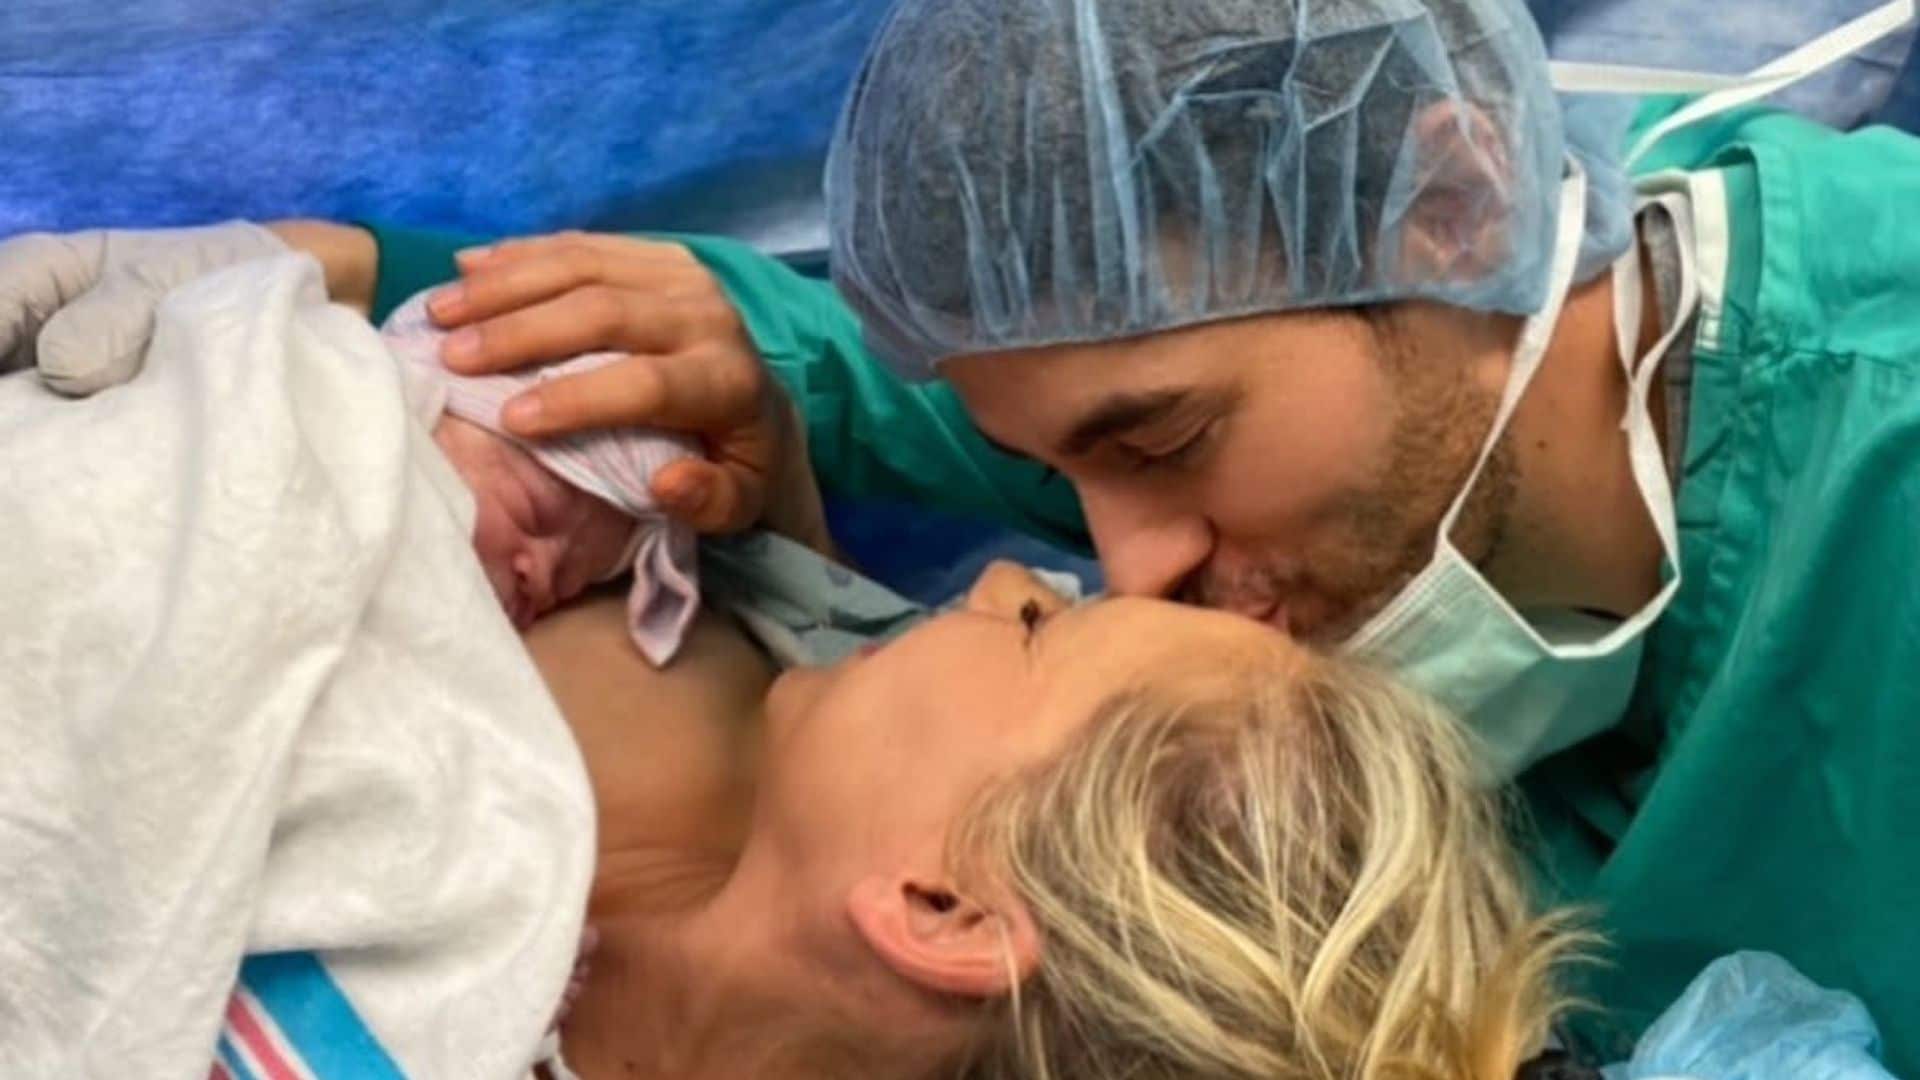 Enrique Iglesias and Anna Kournikova’s baby name revealed!